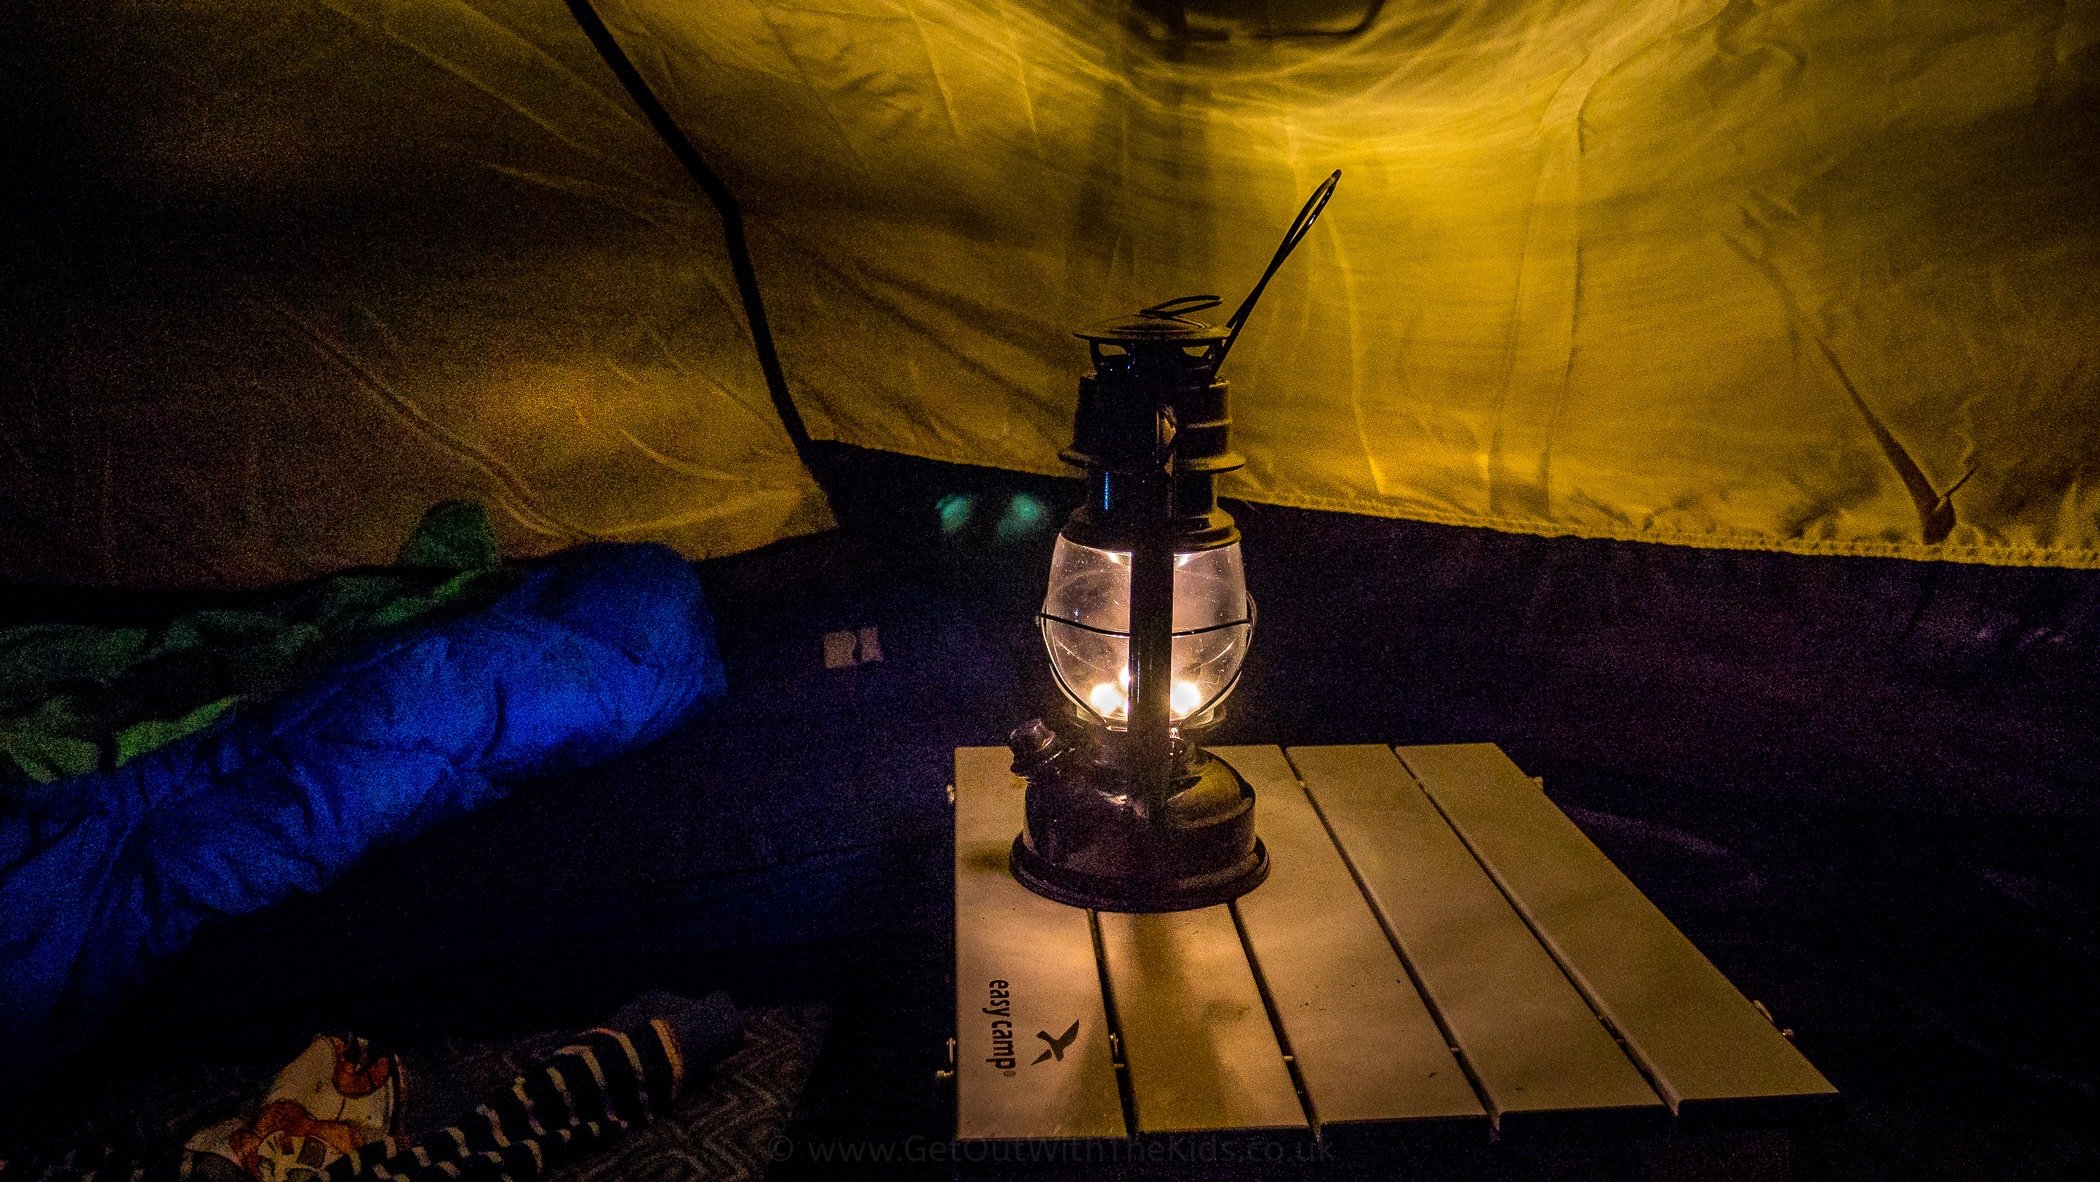 Bushmaster Lantern at Night